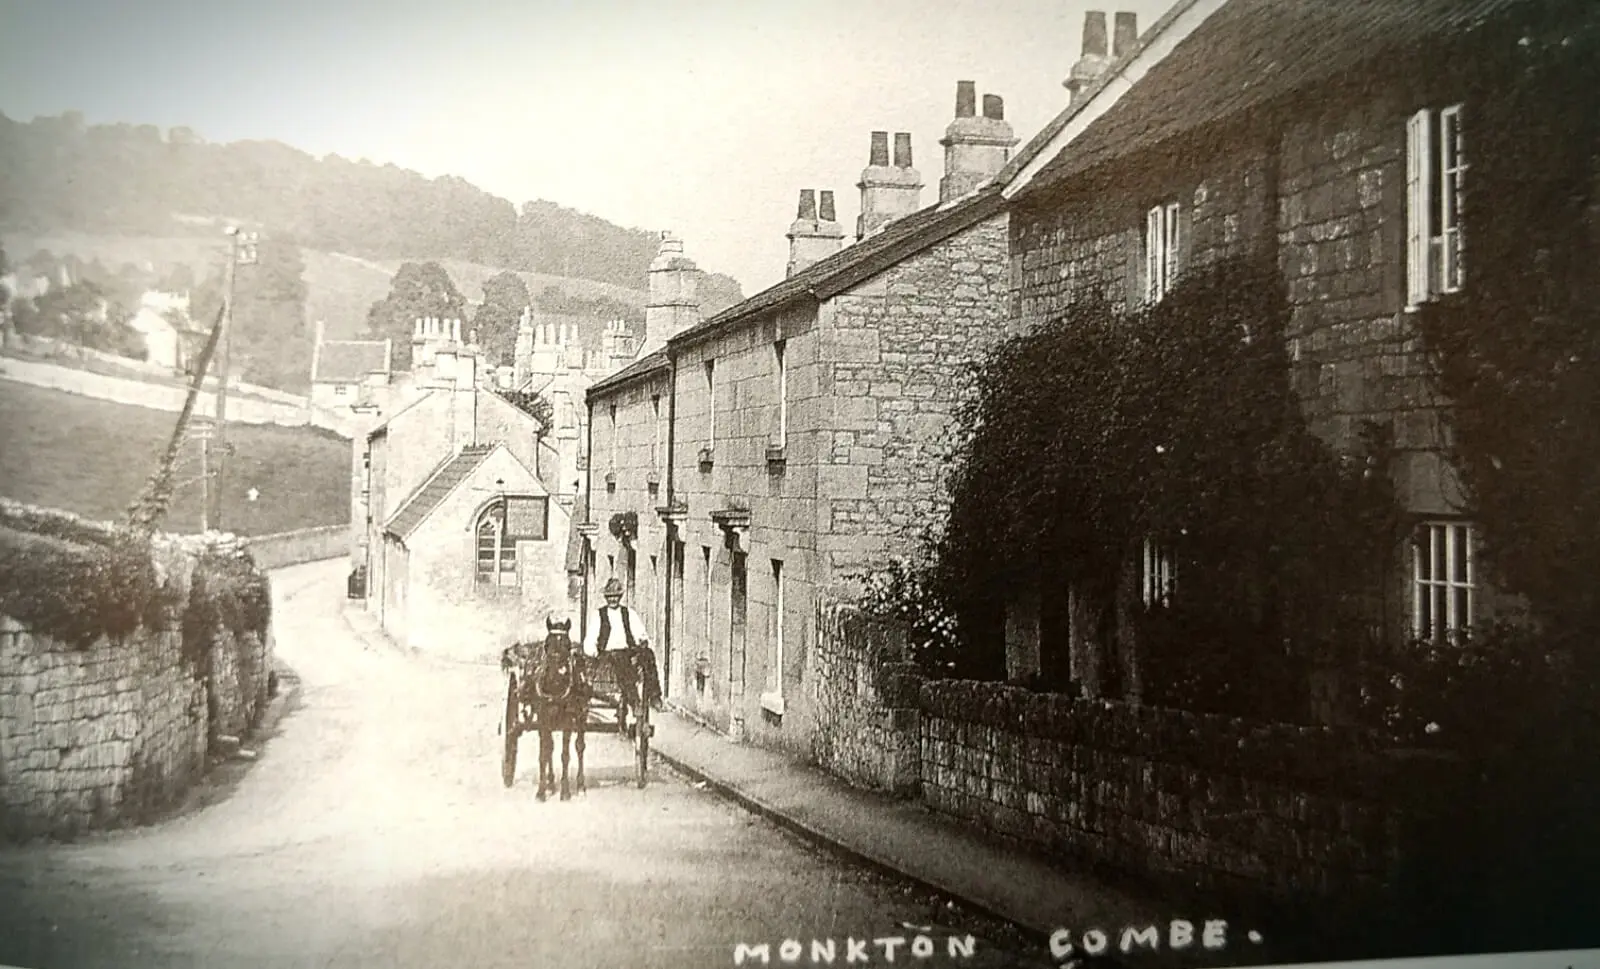 Monkton Combe early 1900s